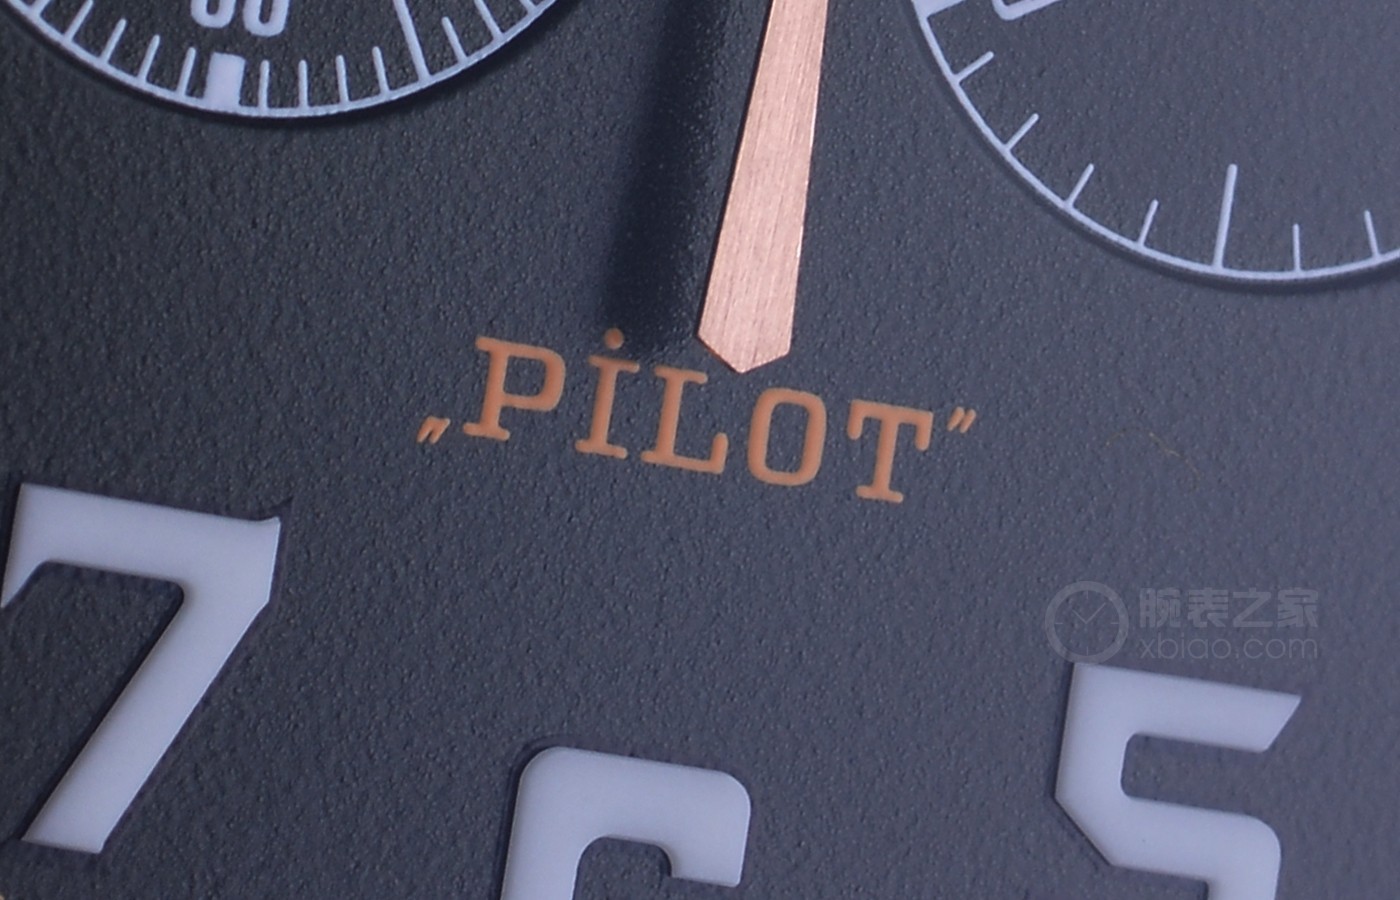 九天之上 决胜巅峰 品评真力时PILOT飞行员系列产品 TYPE 20 ADVENTURE记时腕表